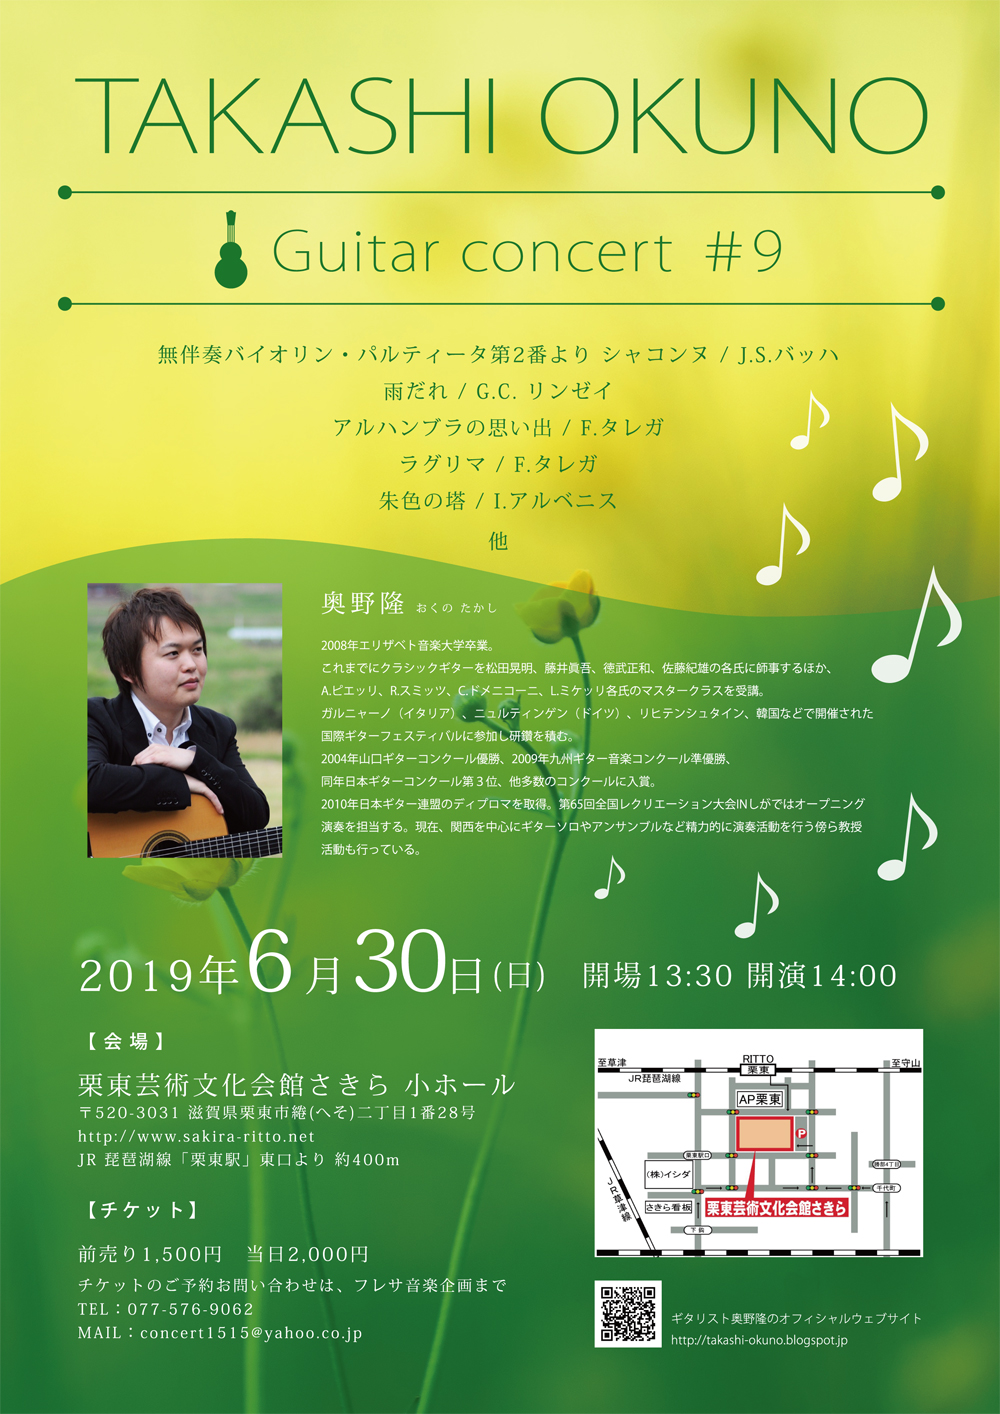 奥野隆コンサート情報 TAKASHI OKUNO Guitar concert #9